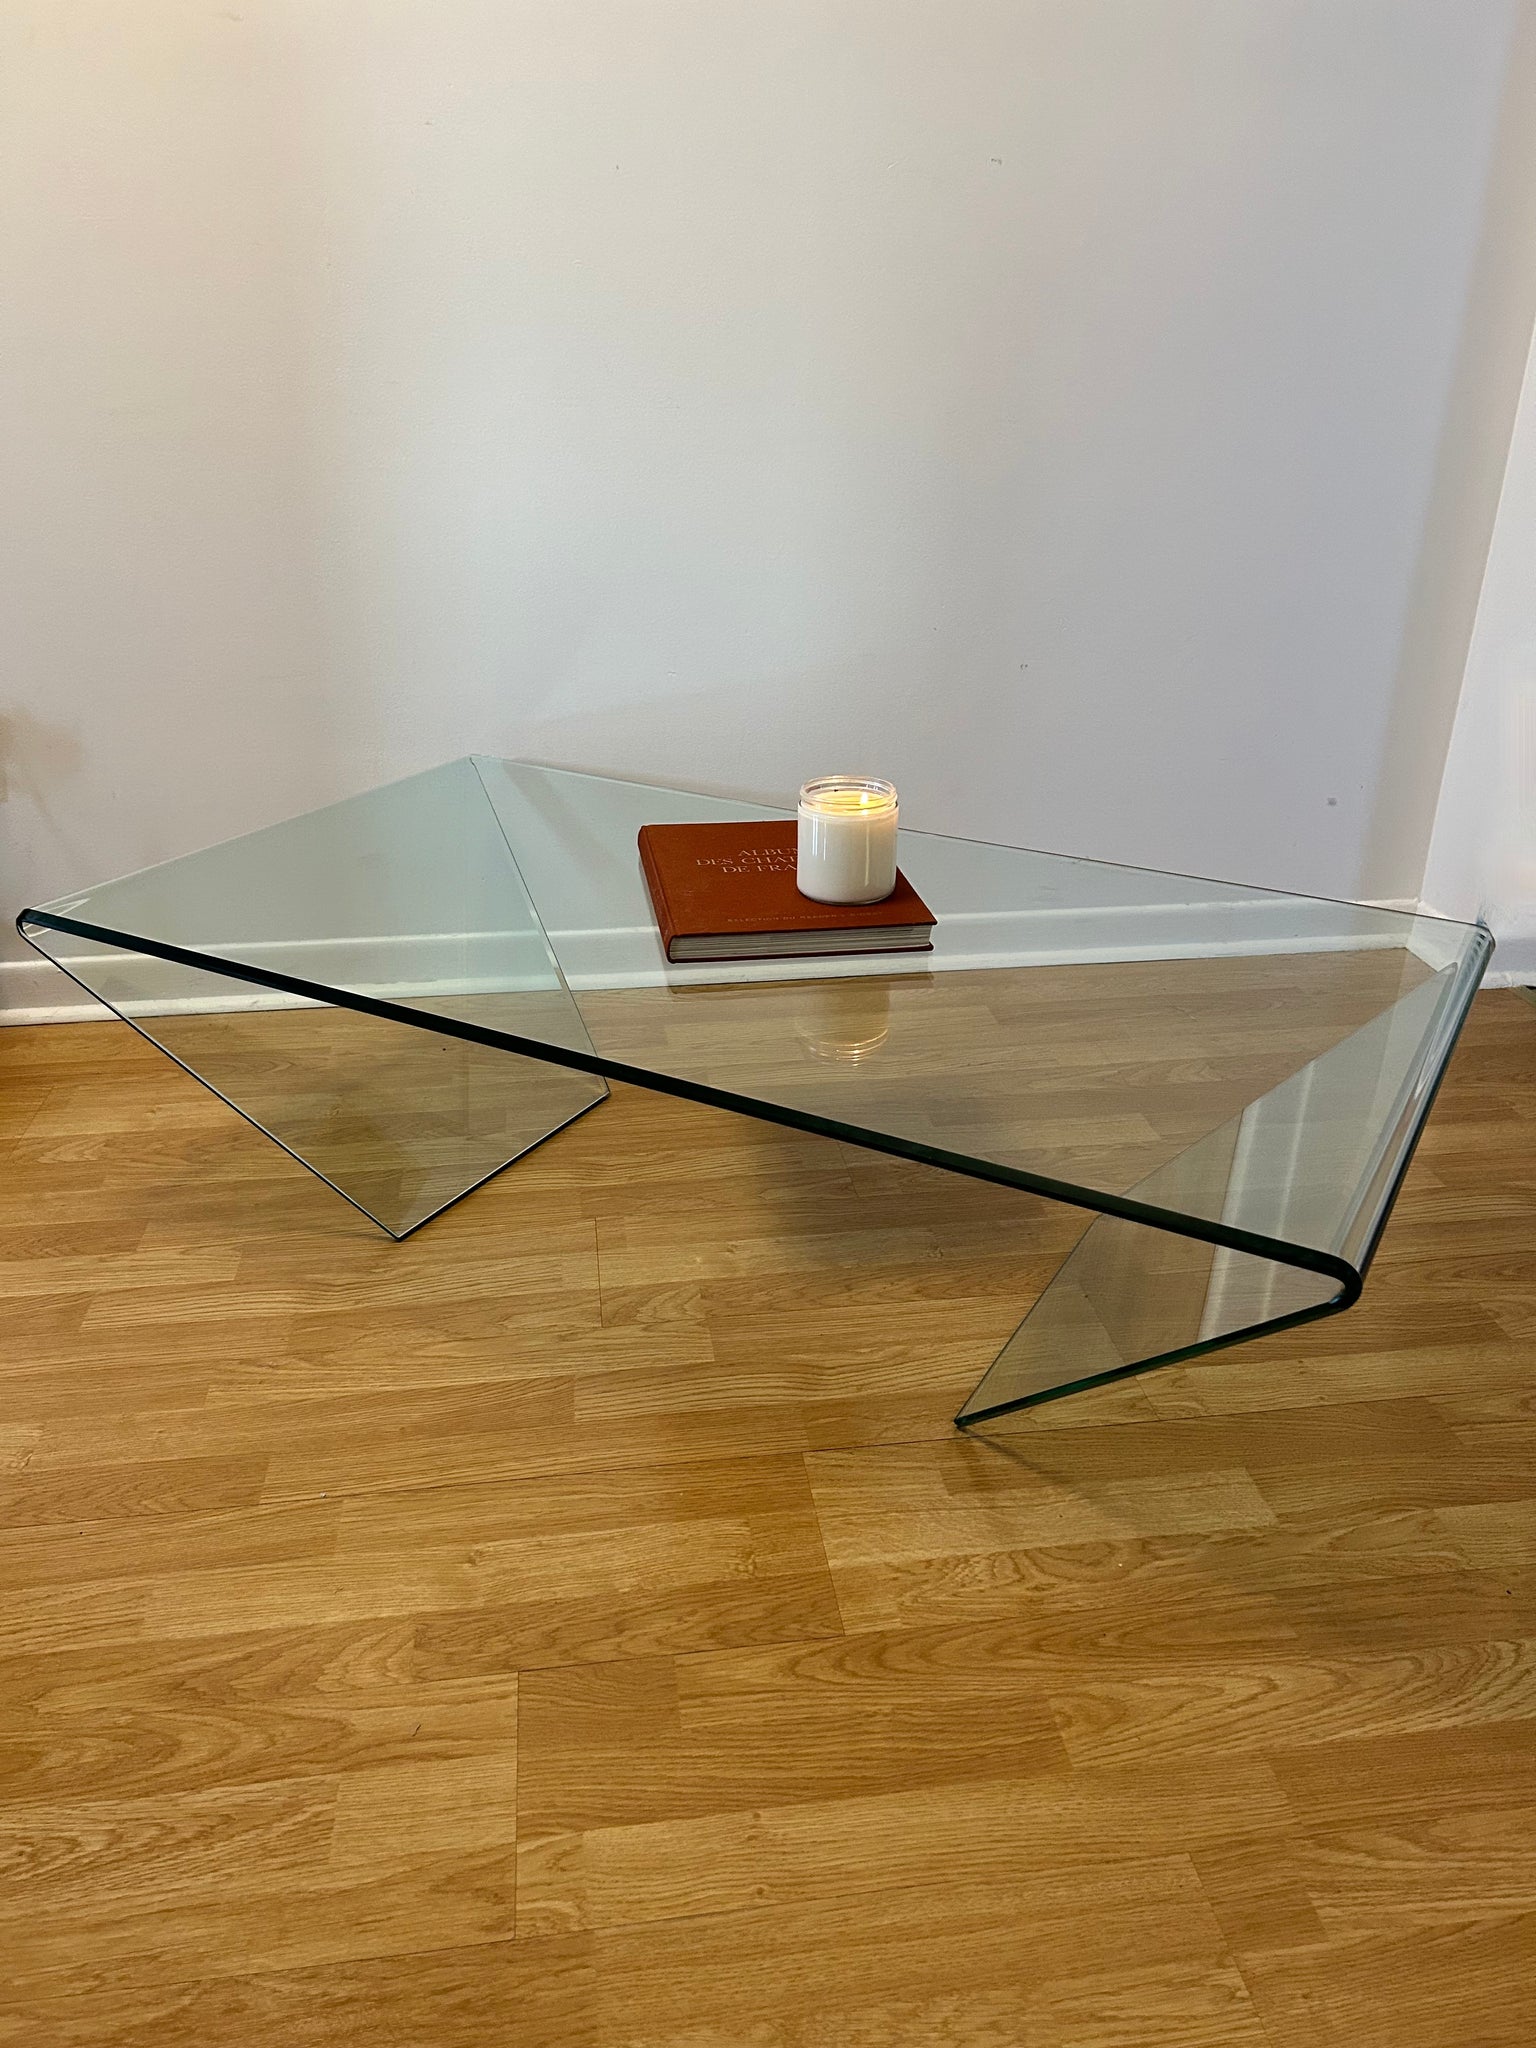 Angled waterfall glass coffee table